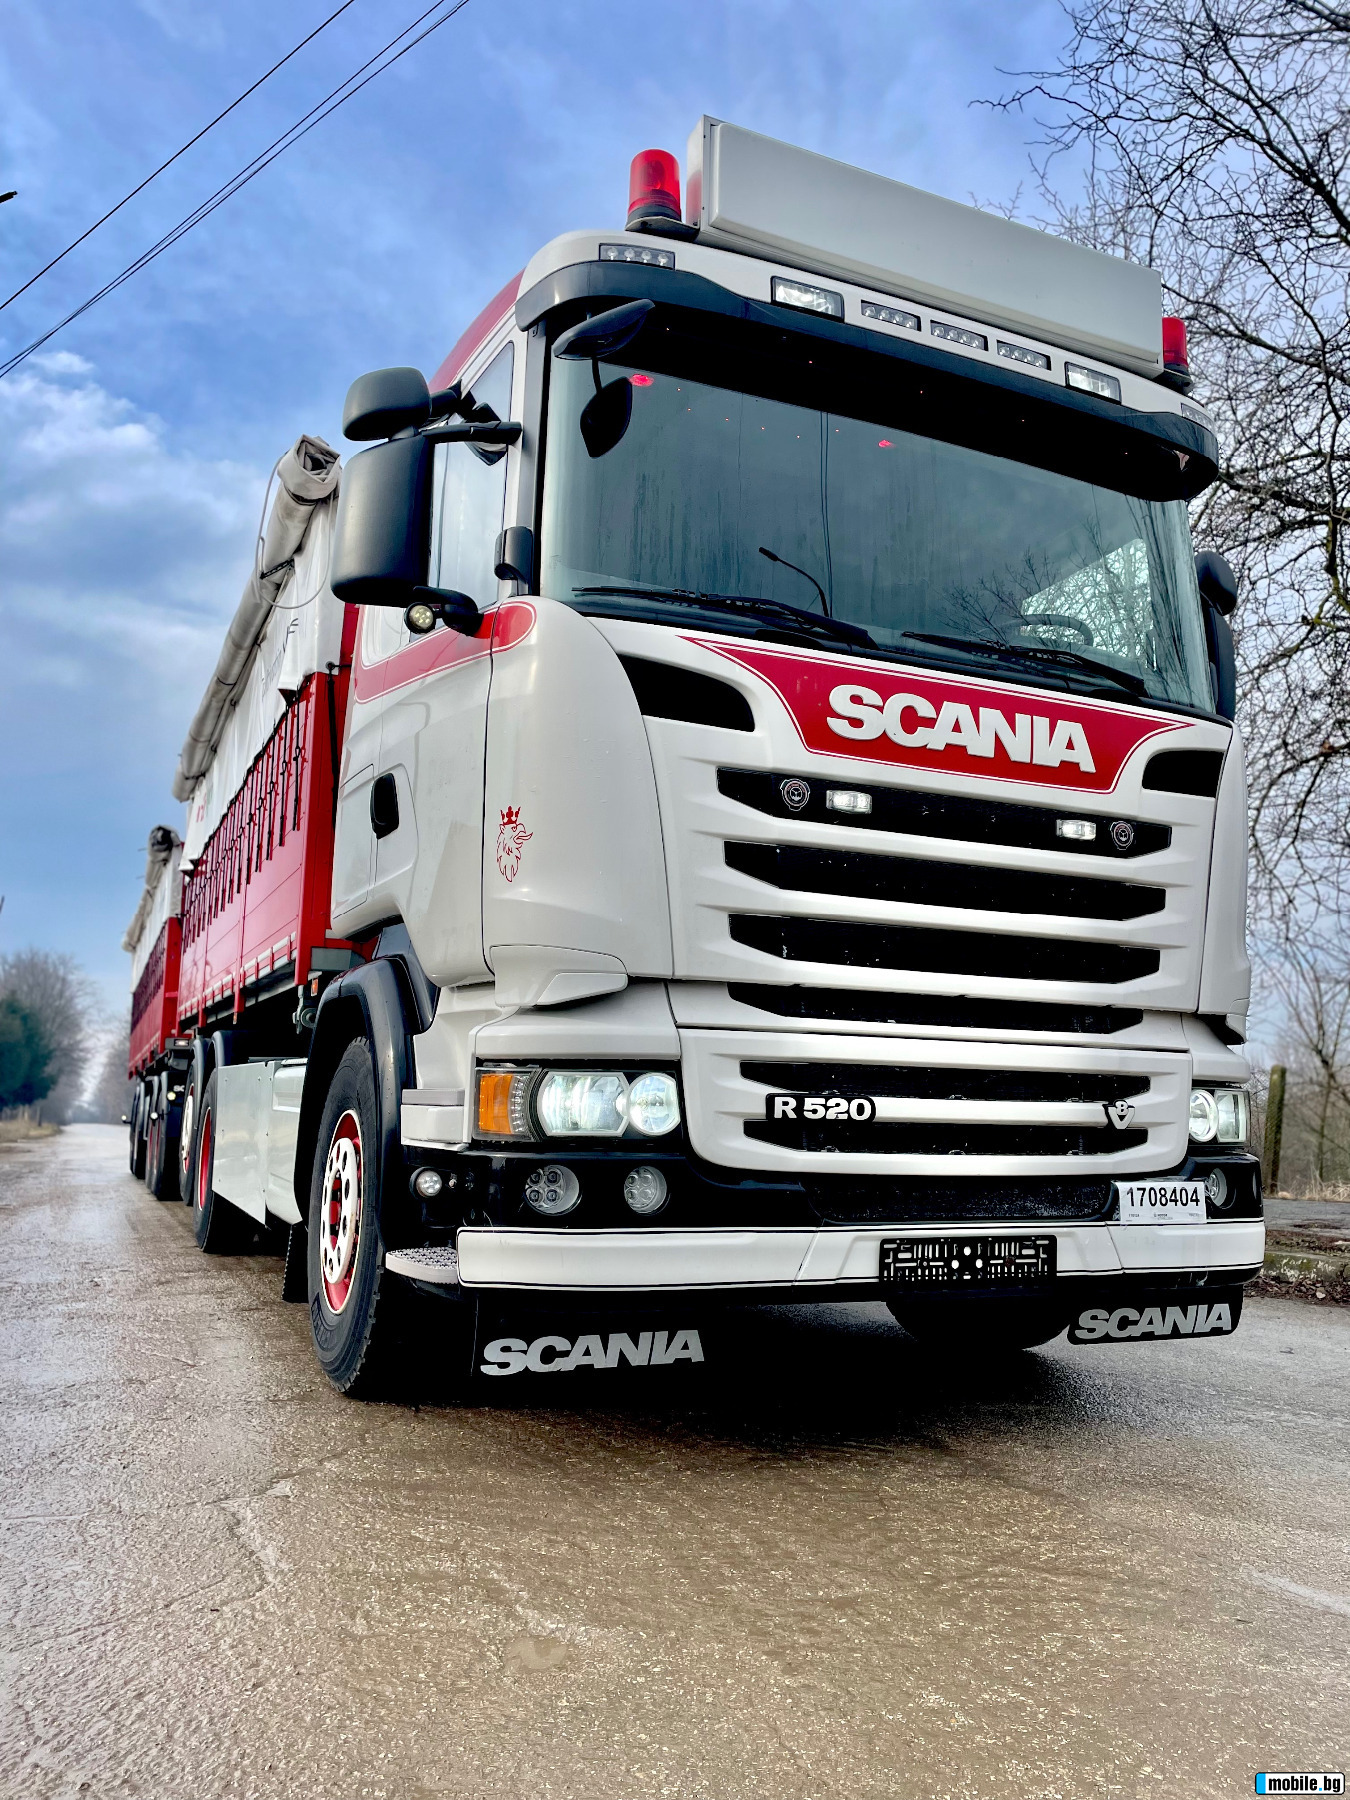 Scania R 500      | Mobile.bg   4